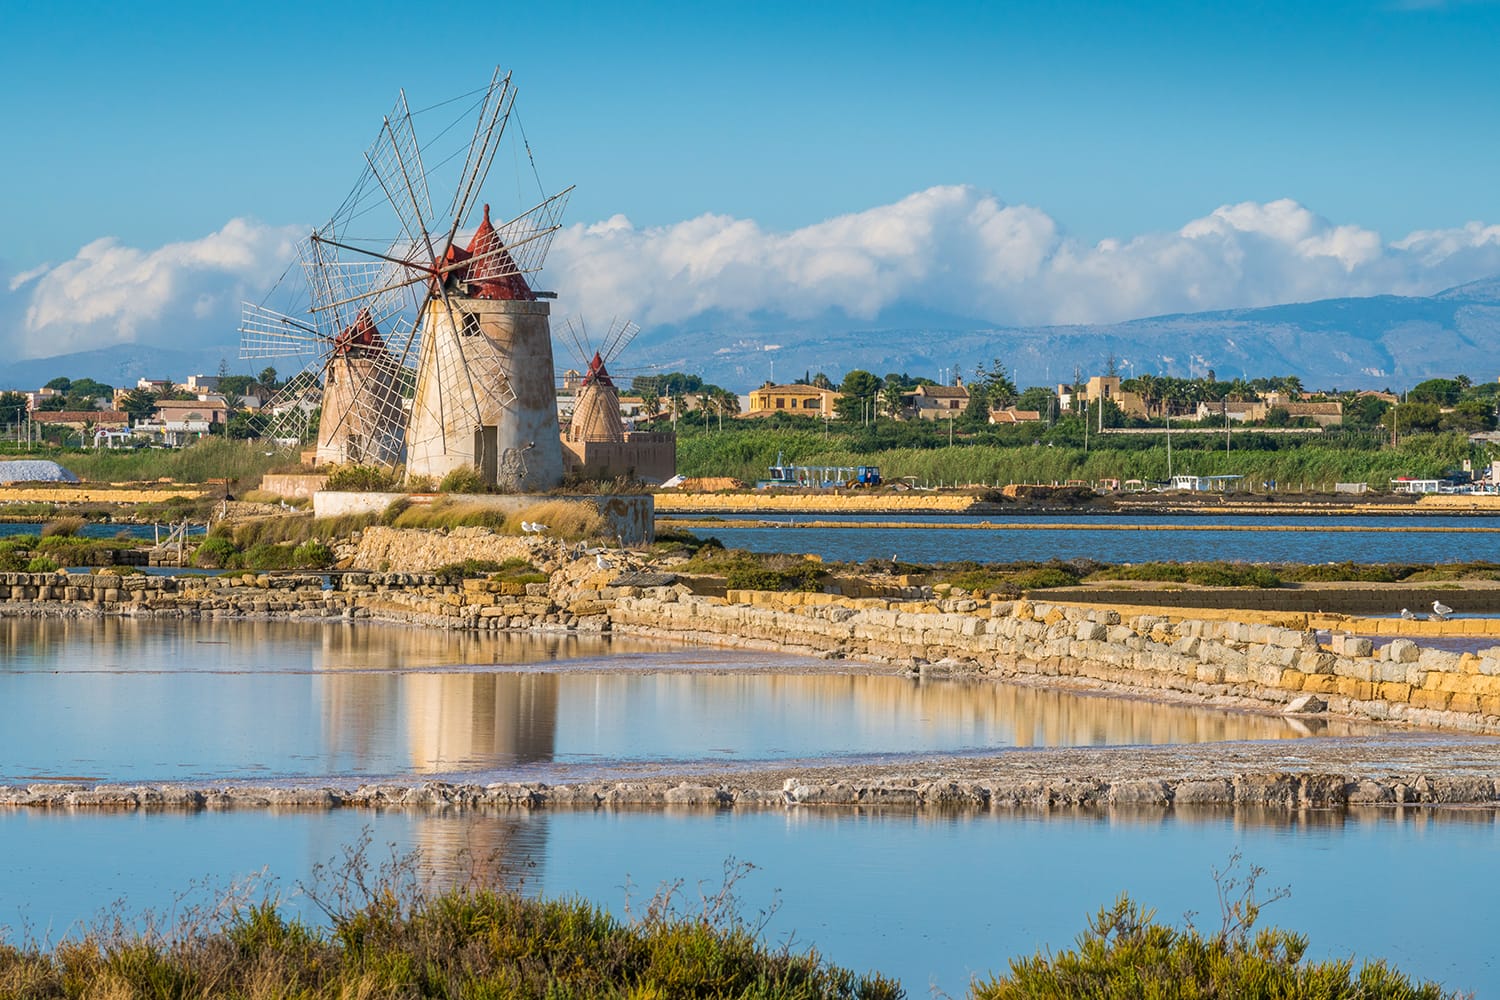 Windmills at the natural reserve of the "Saline dello Stagnone" near Marsala and Trapani, Sicily.